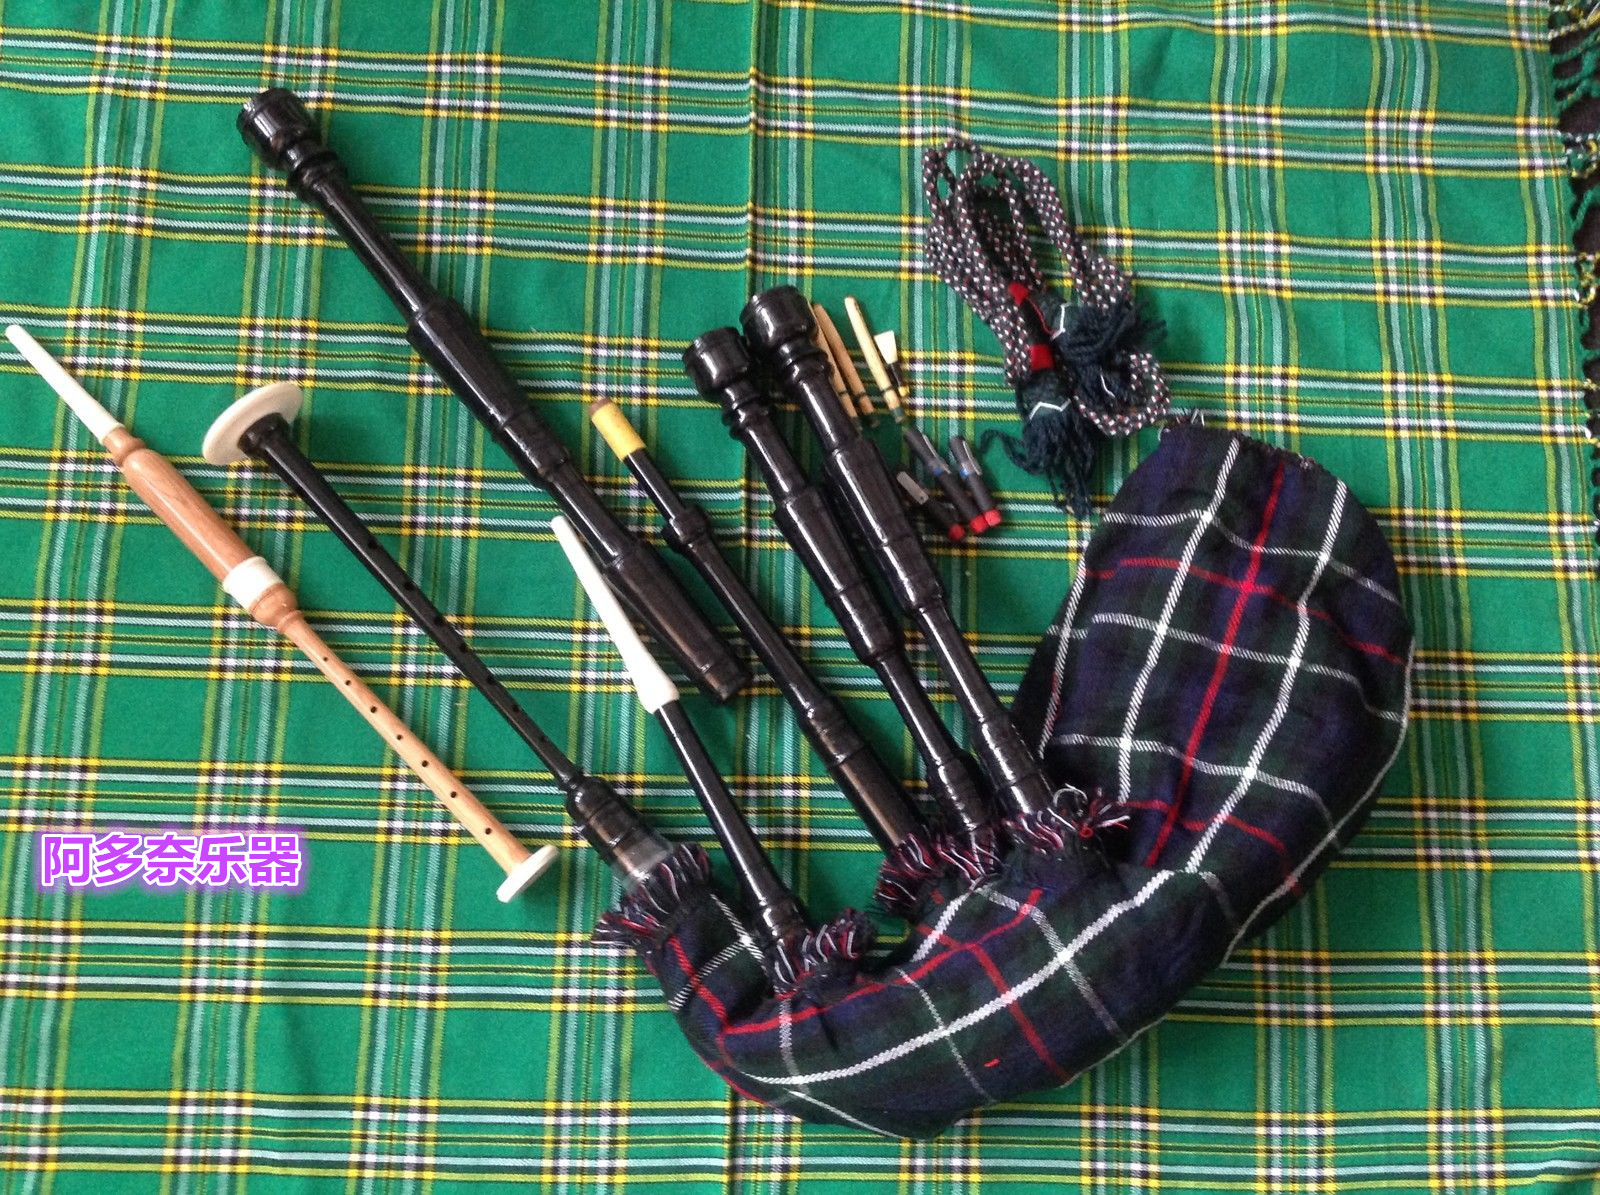 英国进口 苏格兰风笛 紫檀木乐器全套 全新高地风笛 盖塔可演出用